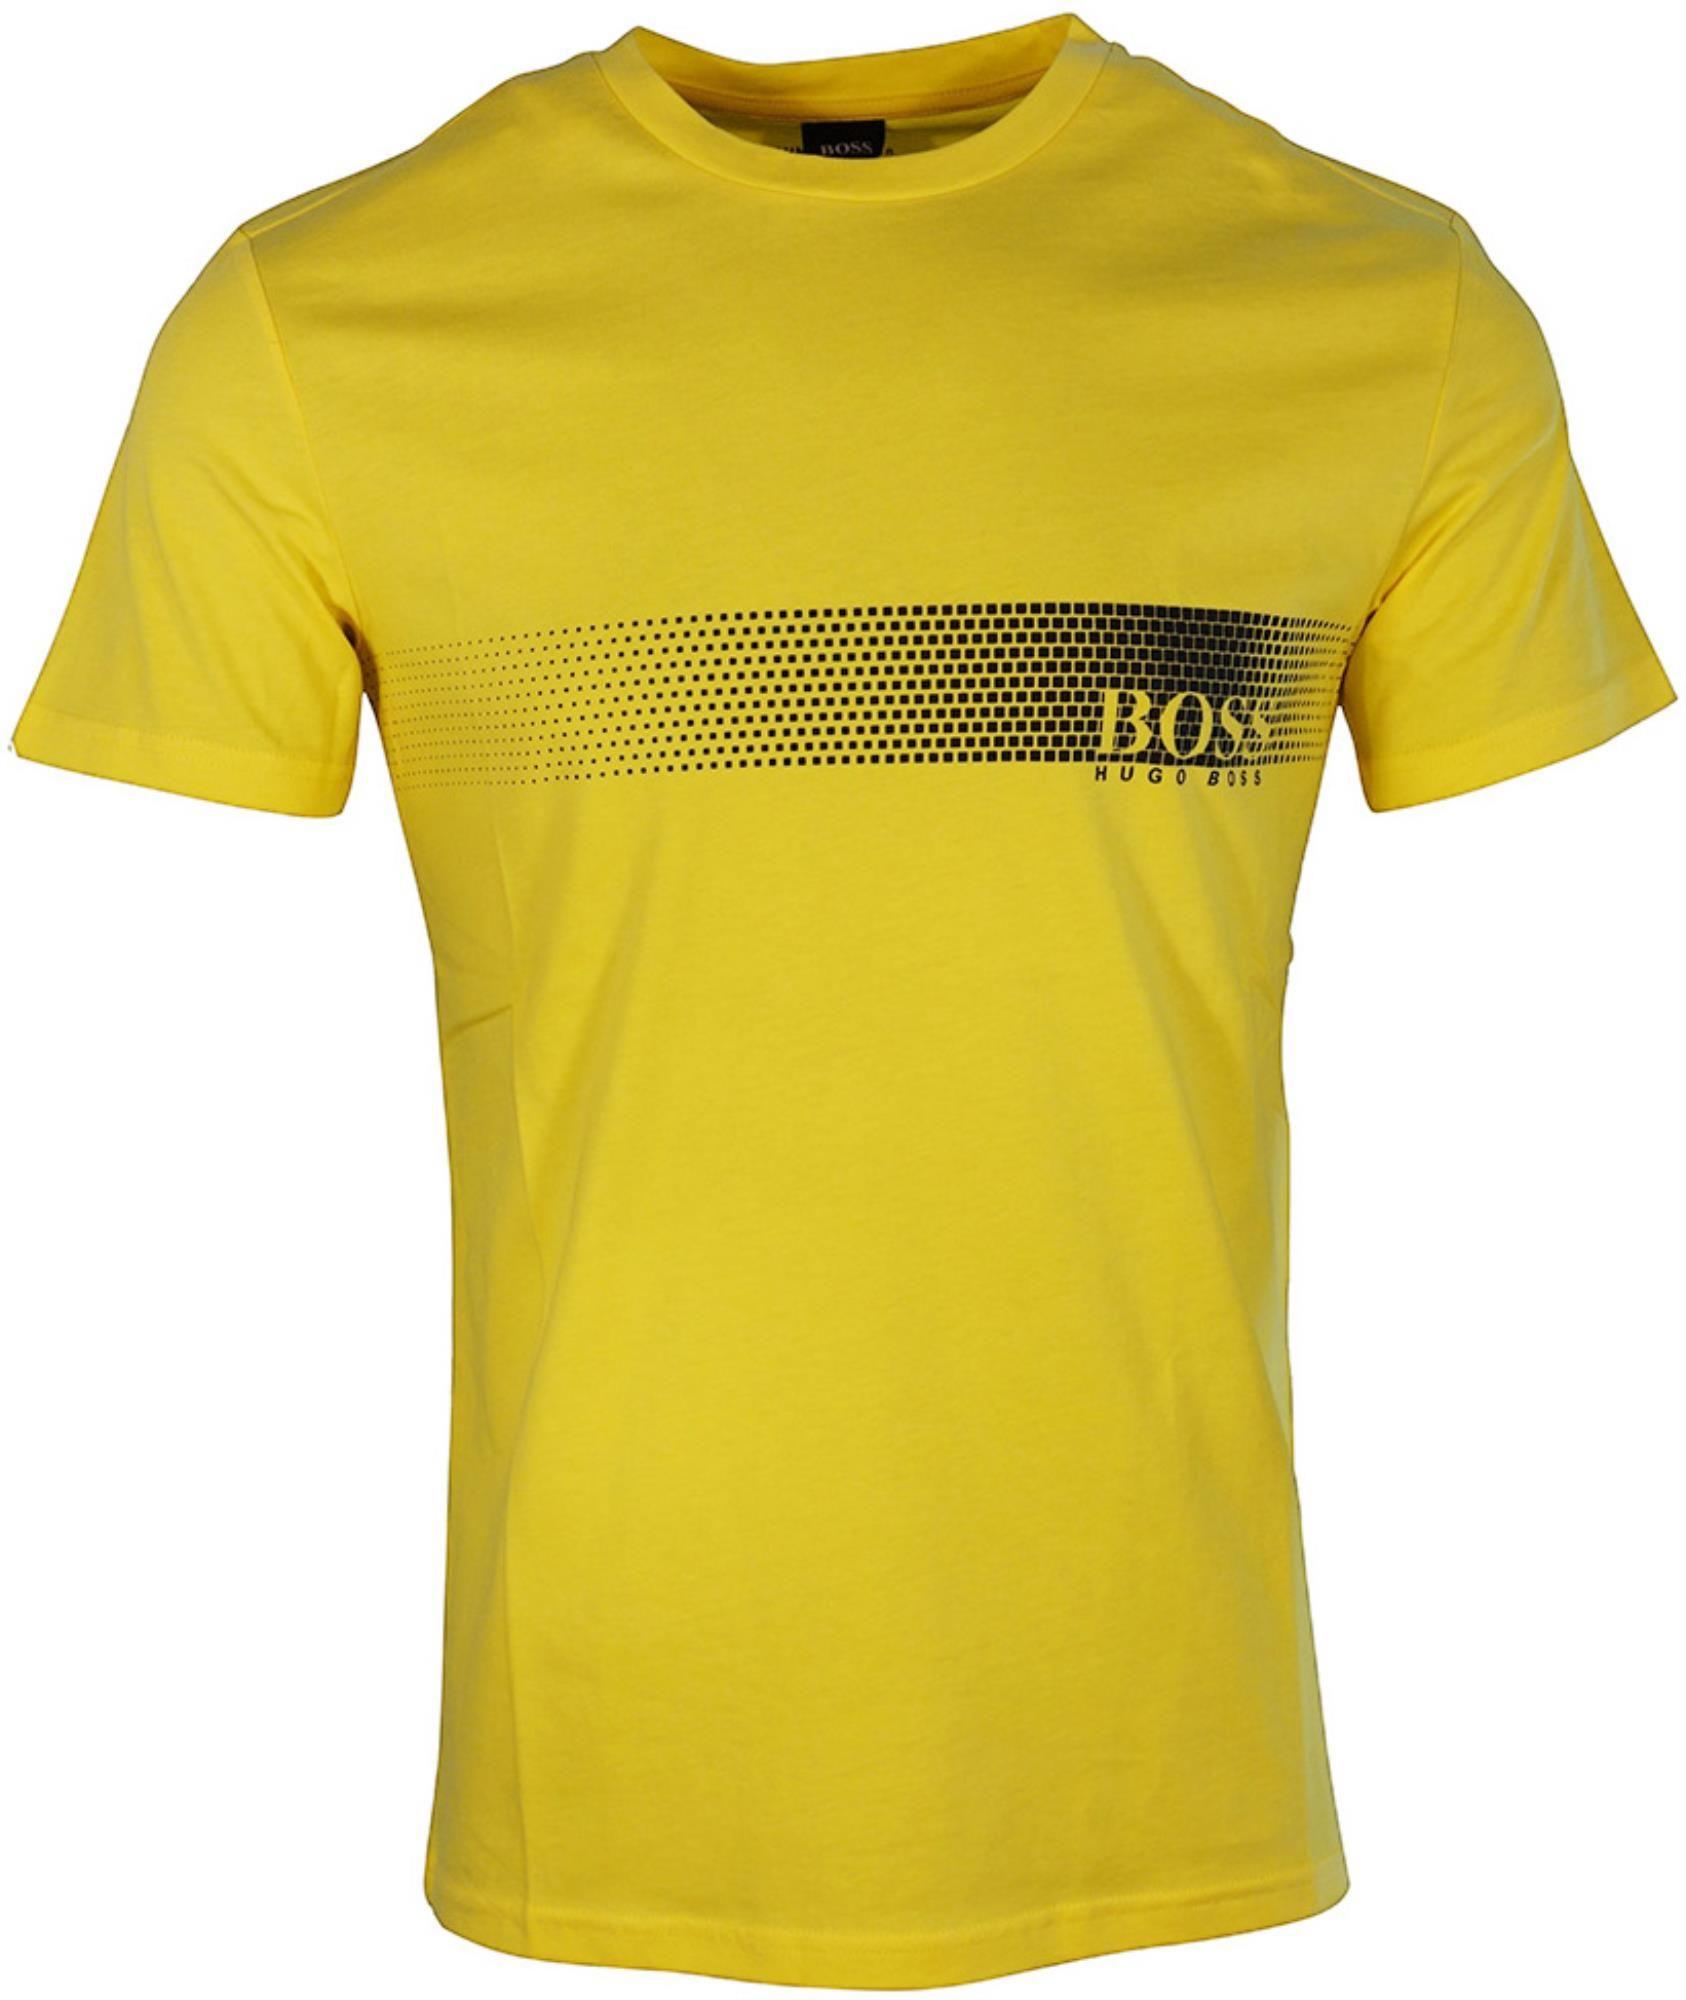 Yellow Stripe Logo - Hugo Boss T-shirt Spot Stripe Logo Print